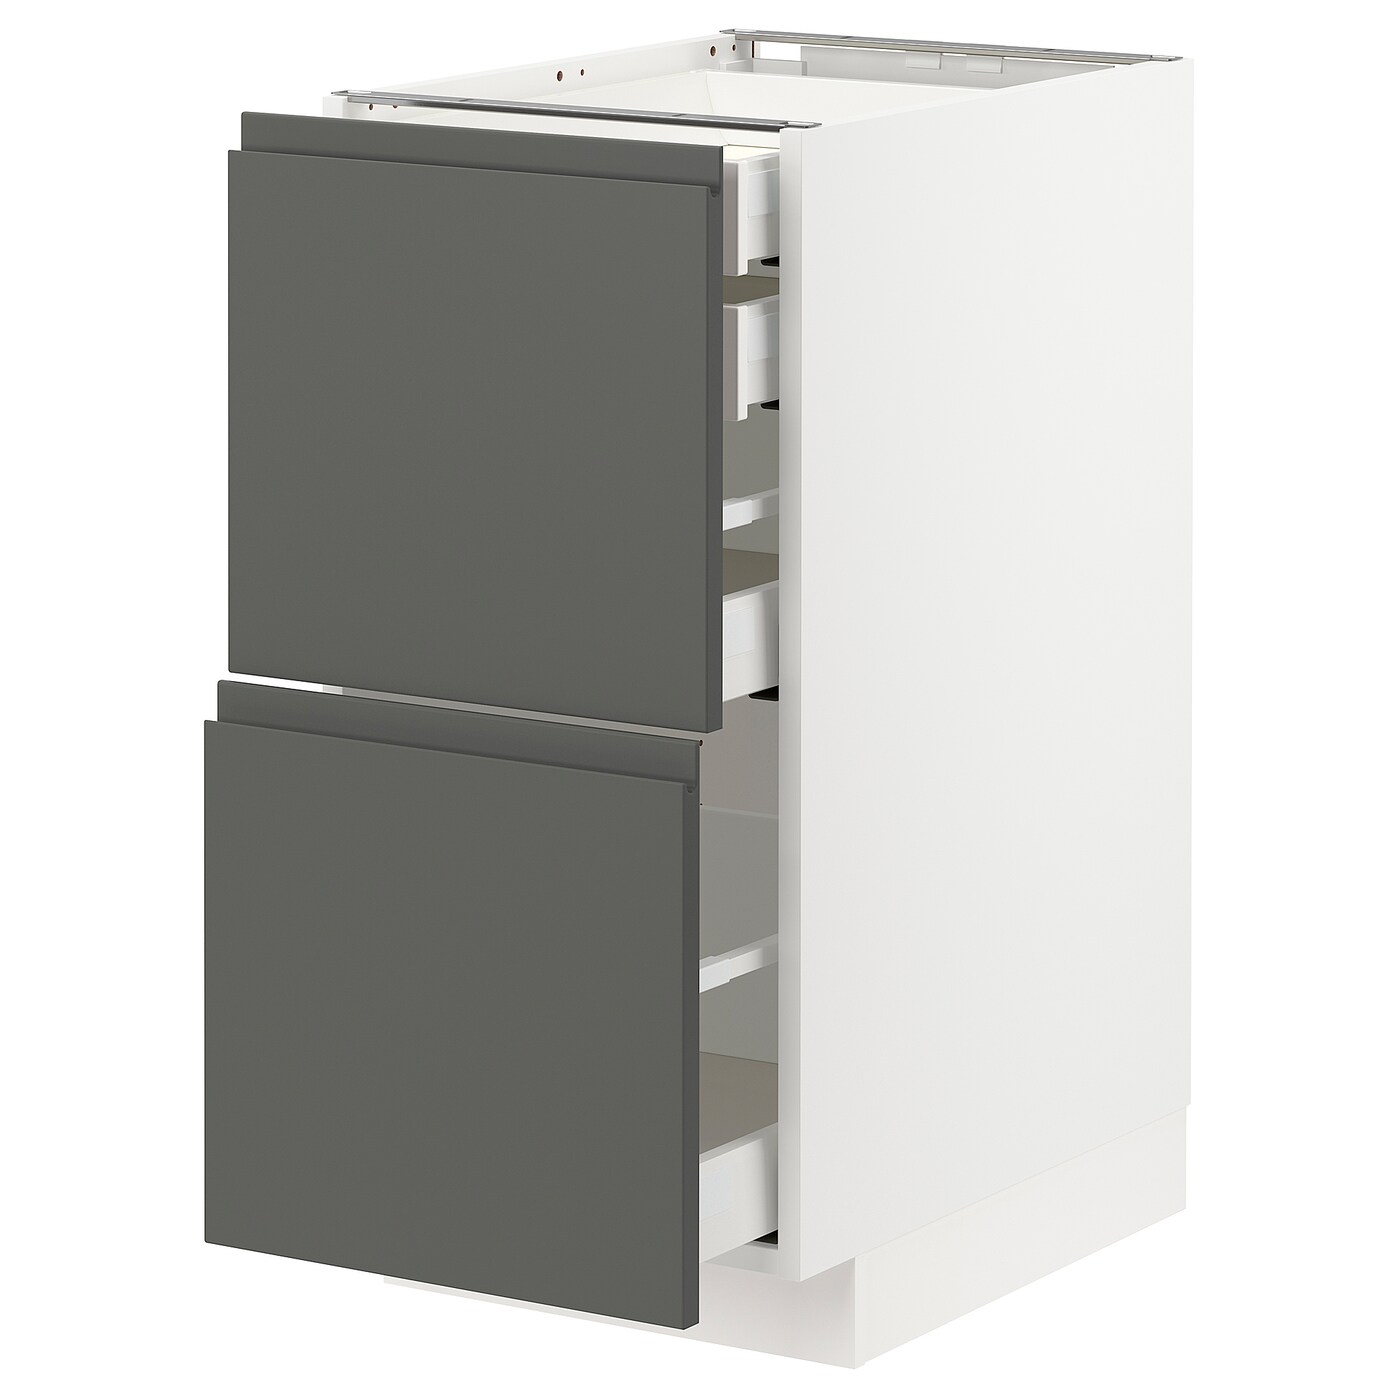 Напольный кухонный шкаф  - IKEA METOD MAXIMERA, 88x62x40см, белый/темно-серый, МЕТОД МАКСИМЕРА ИКЕА